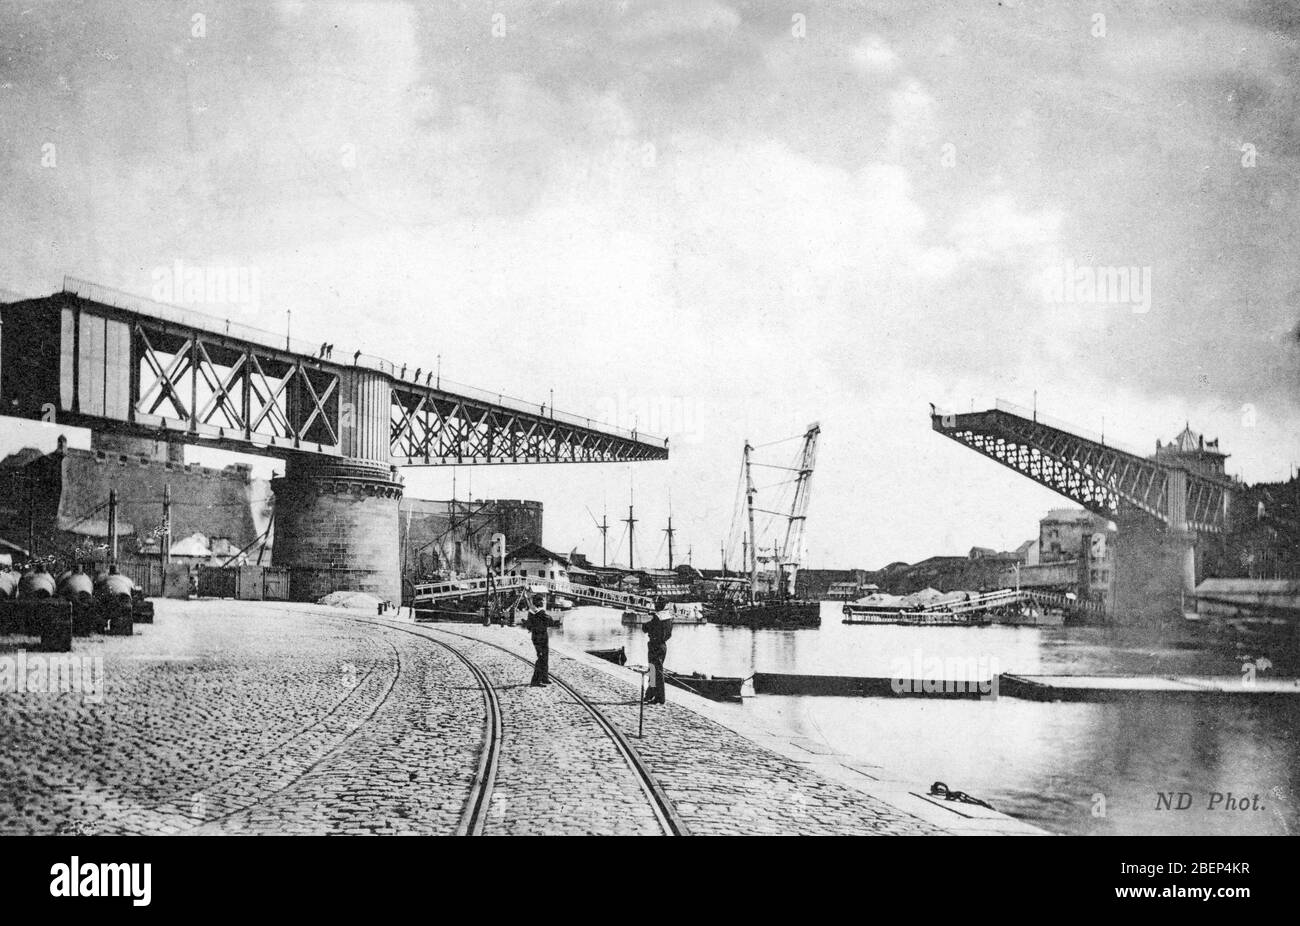 Vue du port militaire de Brest, le pont tournant, Finistere, Bretagne carte postale 1915 Collection privee Foto Stock